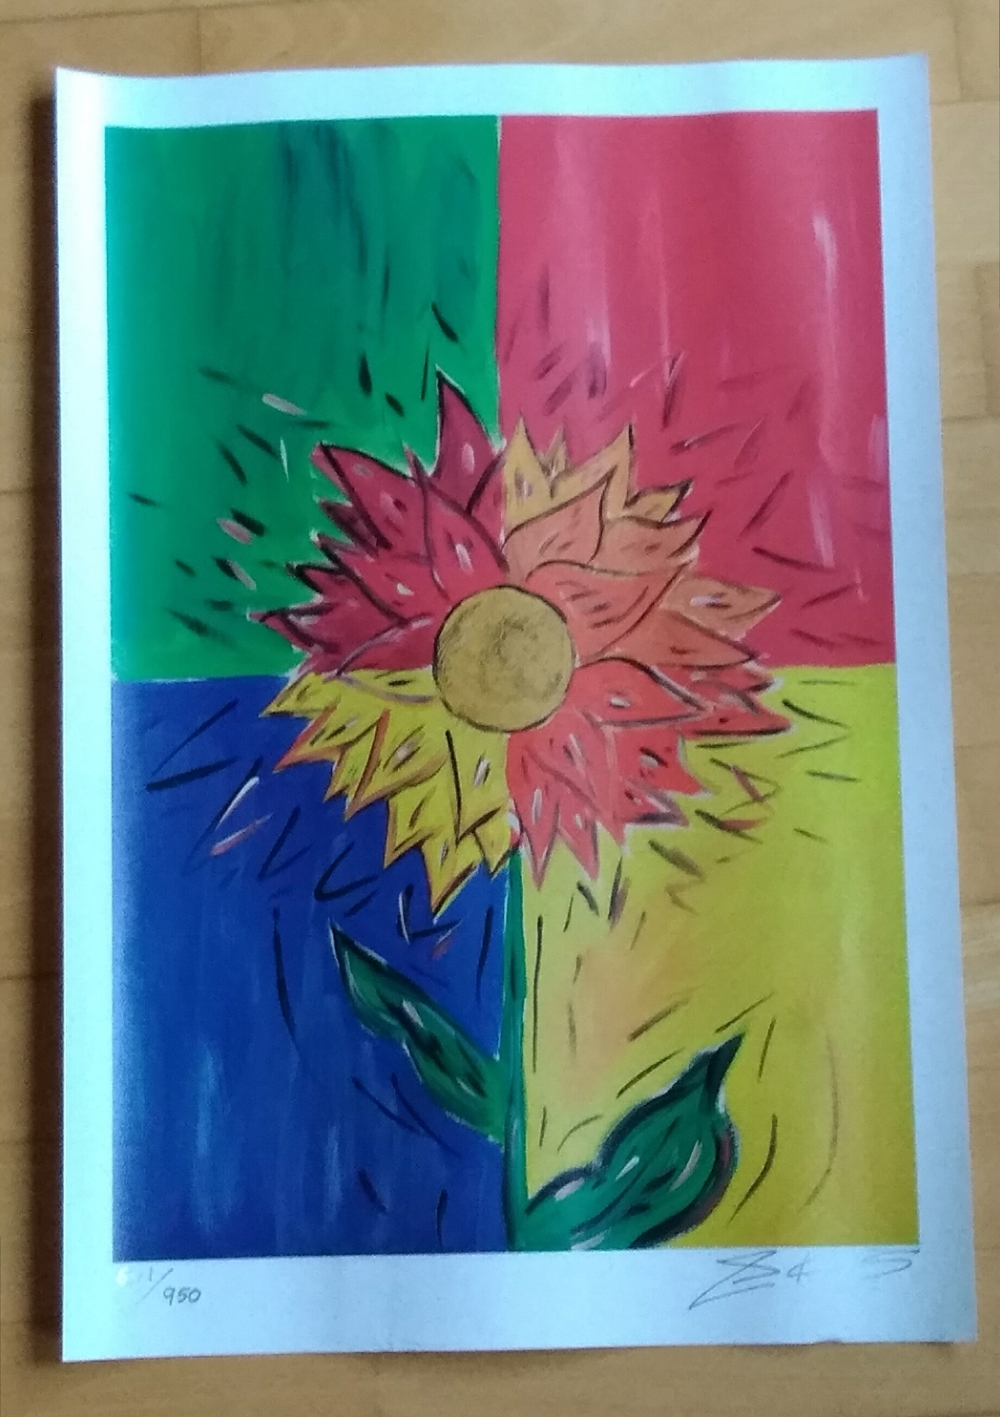 Kunstdruck "Sunflower" von Stanley King